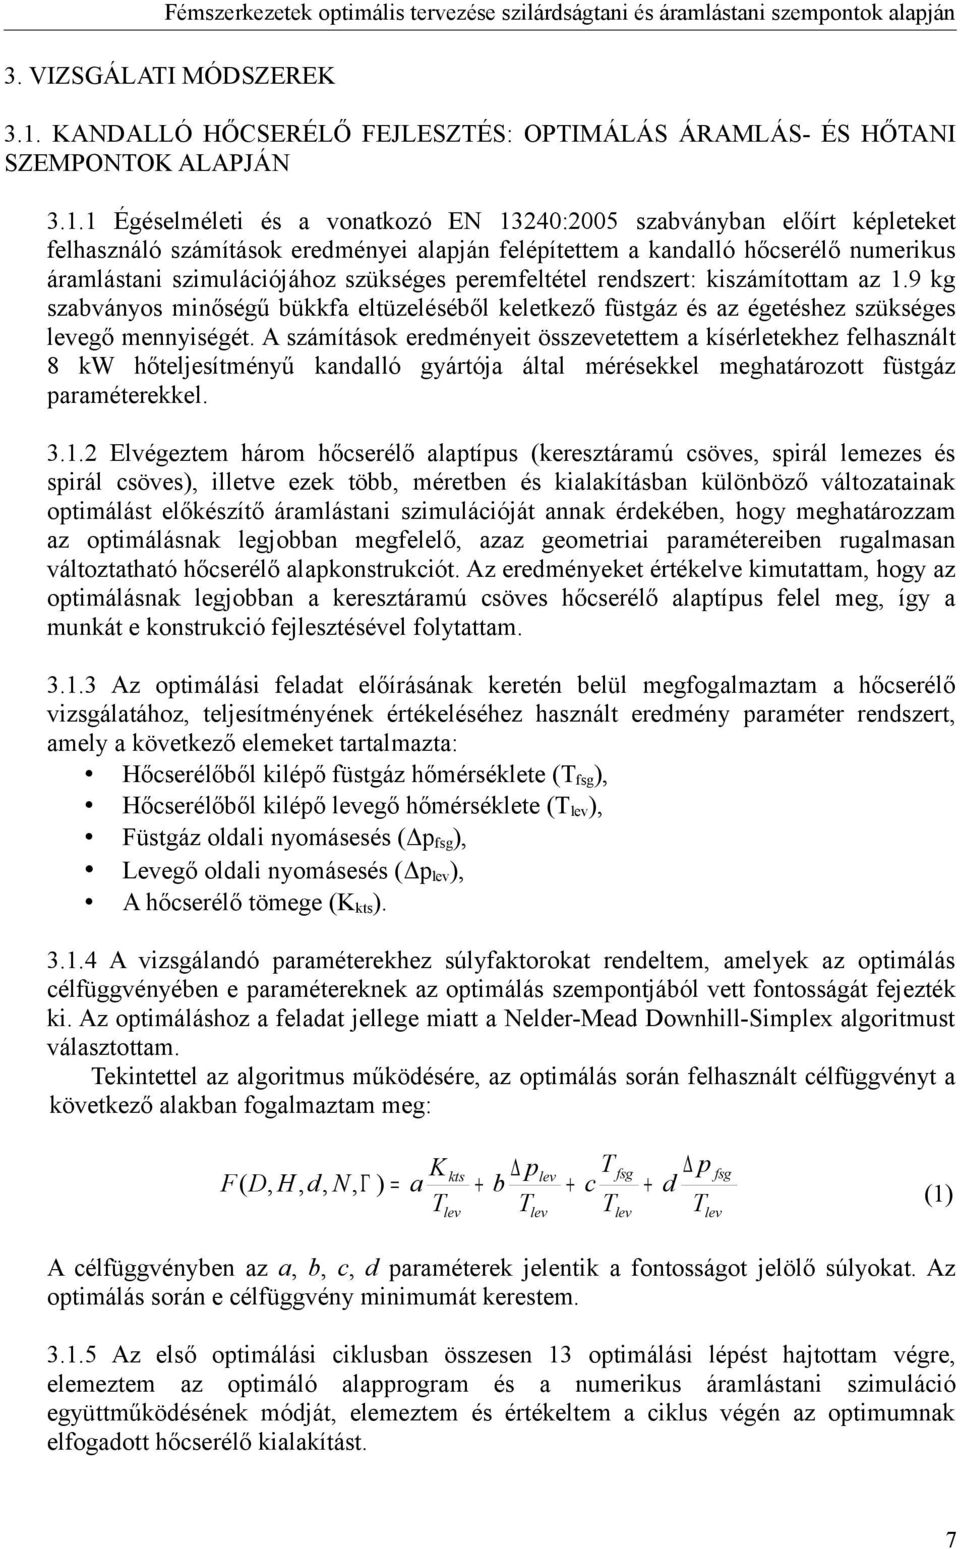 1 Égéselméleti és a vonatkozó EN 13240:2005 szabványban előírt képleteket felhasználó számítások eredményei alapján felépítettem a kandalló hőcserélő numerikus áramlástani szimulációjához szükséges